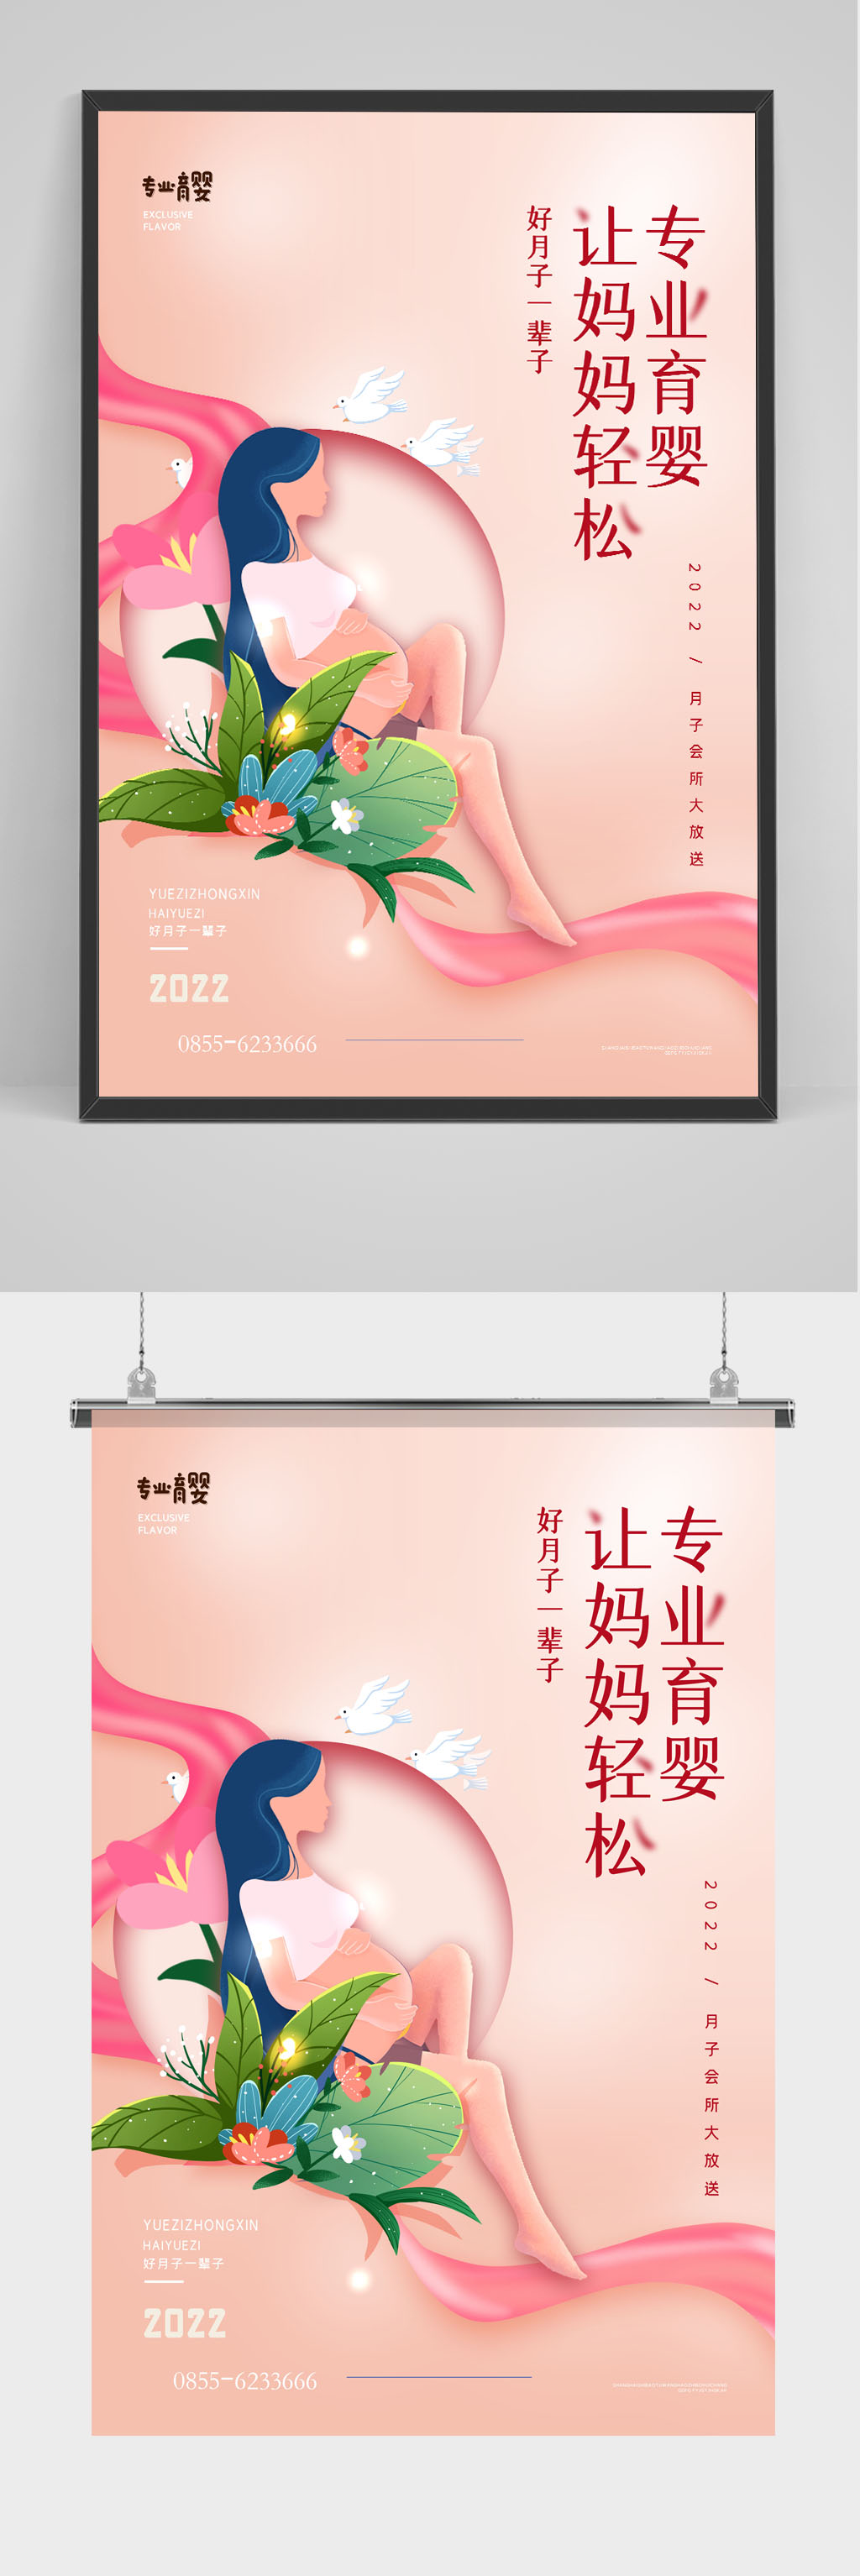 时尚大气粉色温馨月子中心宣传海报